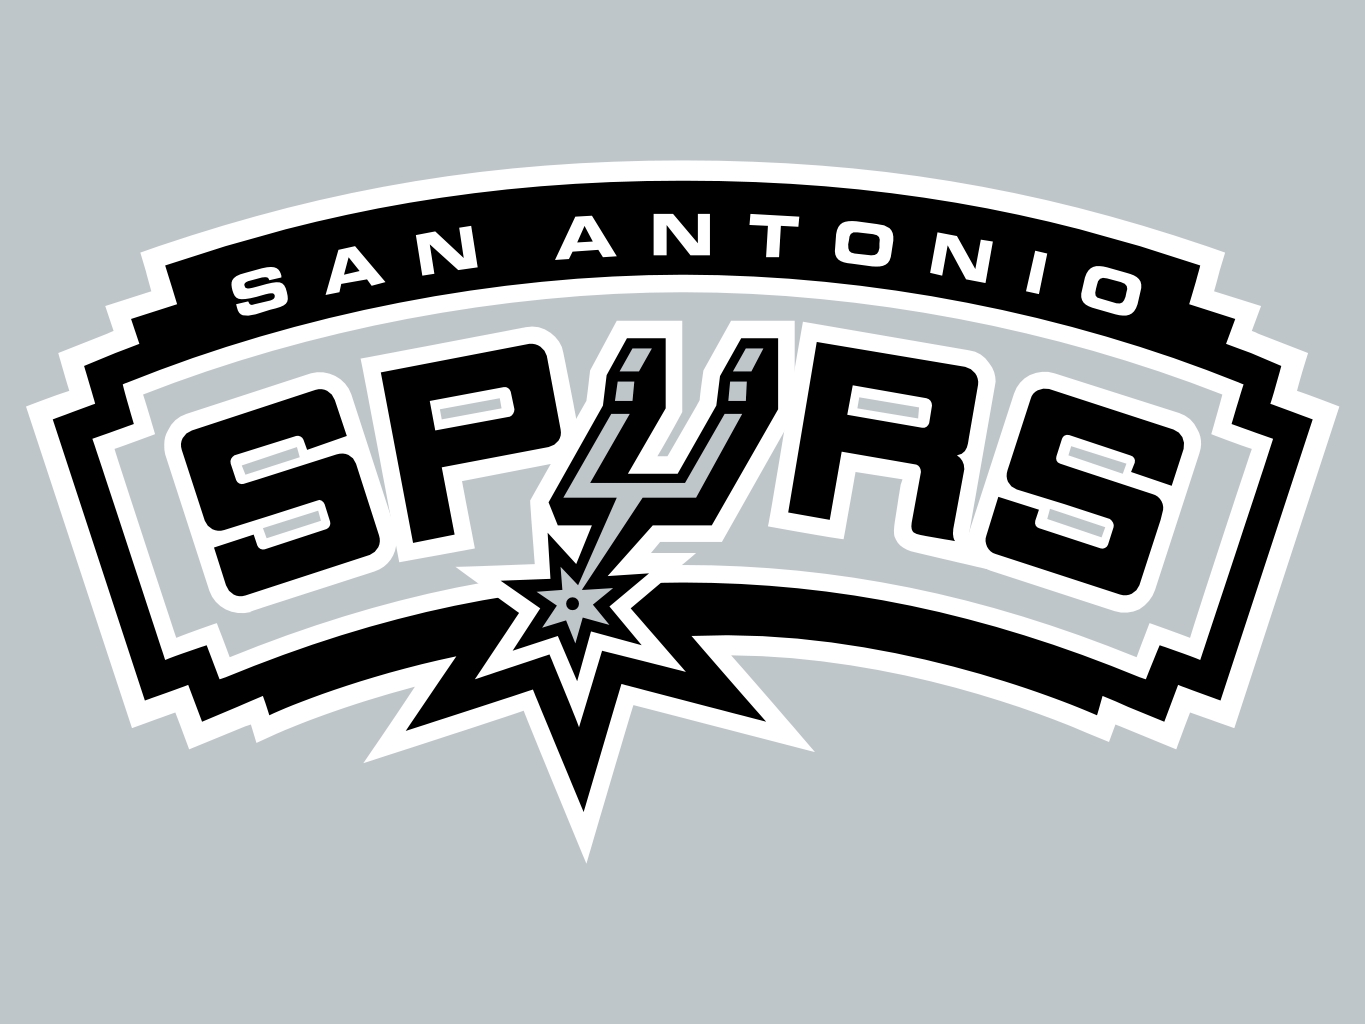 San Antonio Spurs | Pro Sports Teams Wiki | FANDOM powered by Wikia